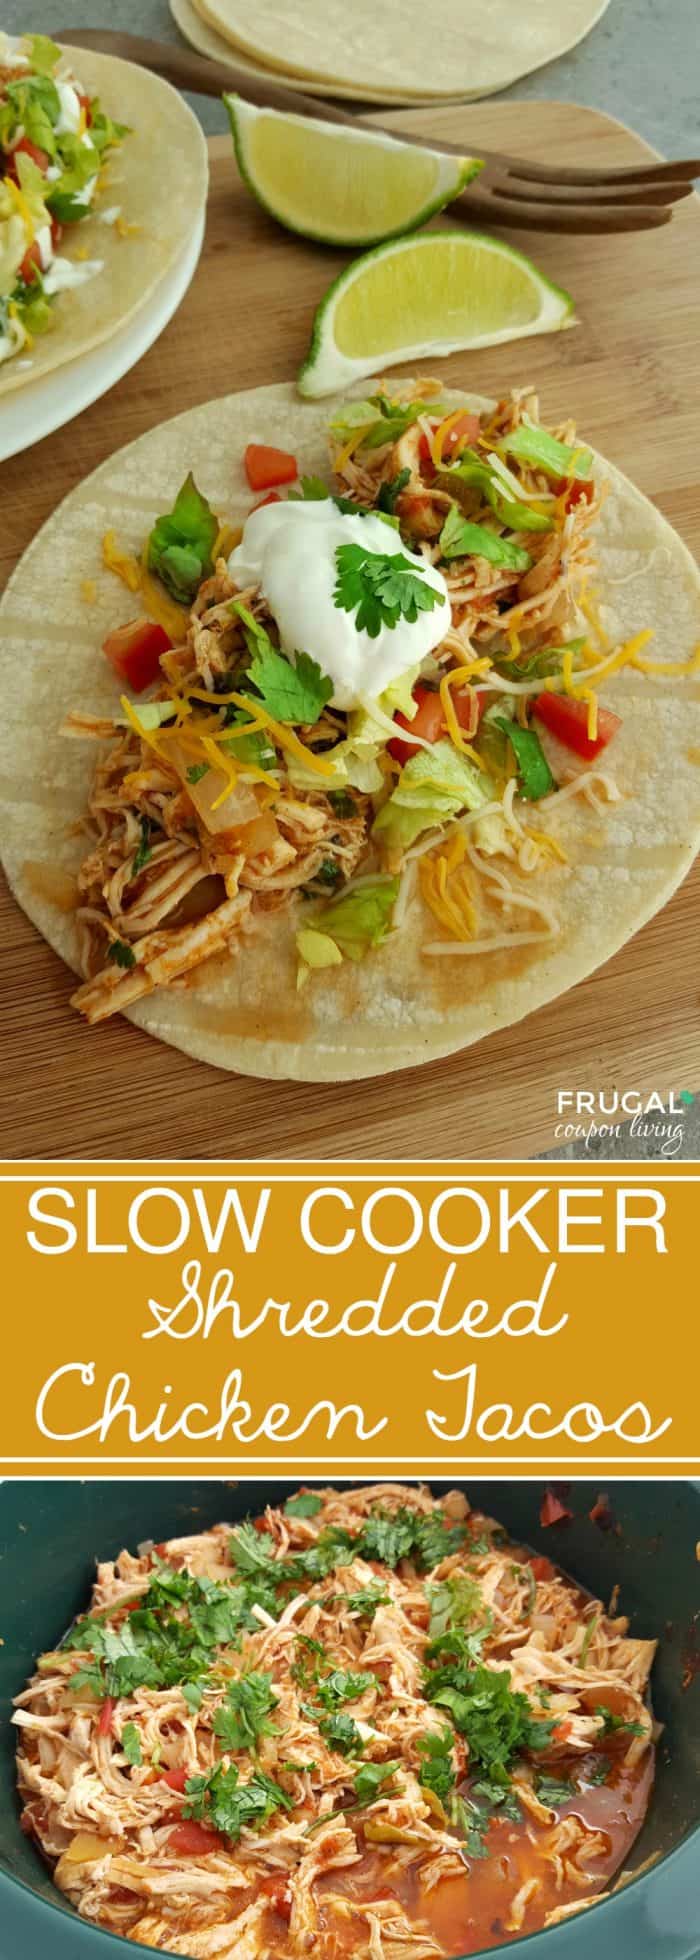 shredded-chicken-tacos-crock-pot-long-frugal-coupon-living